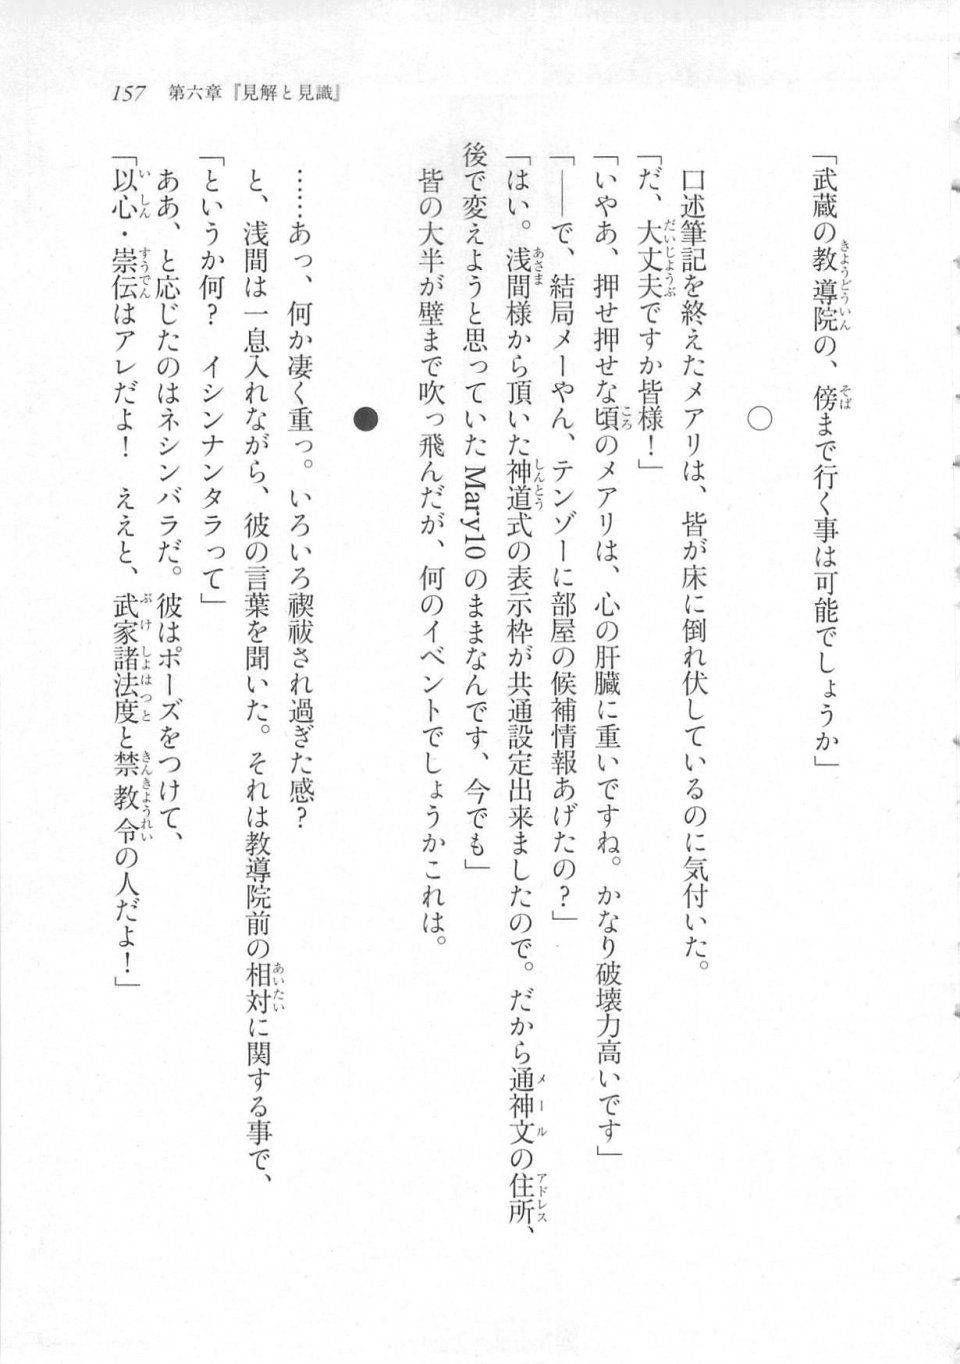 Kyoukai Senjou no Horizon LN Sidestory Vol 3 - Photo #161